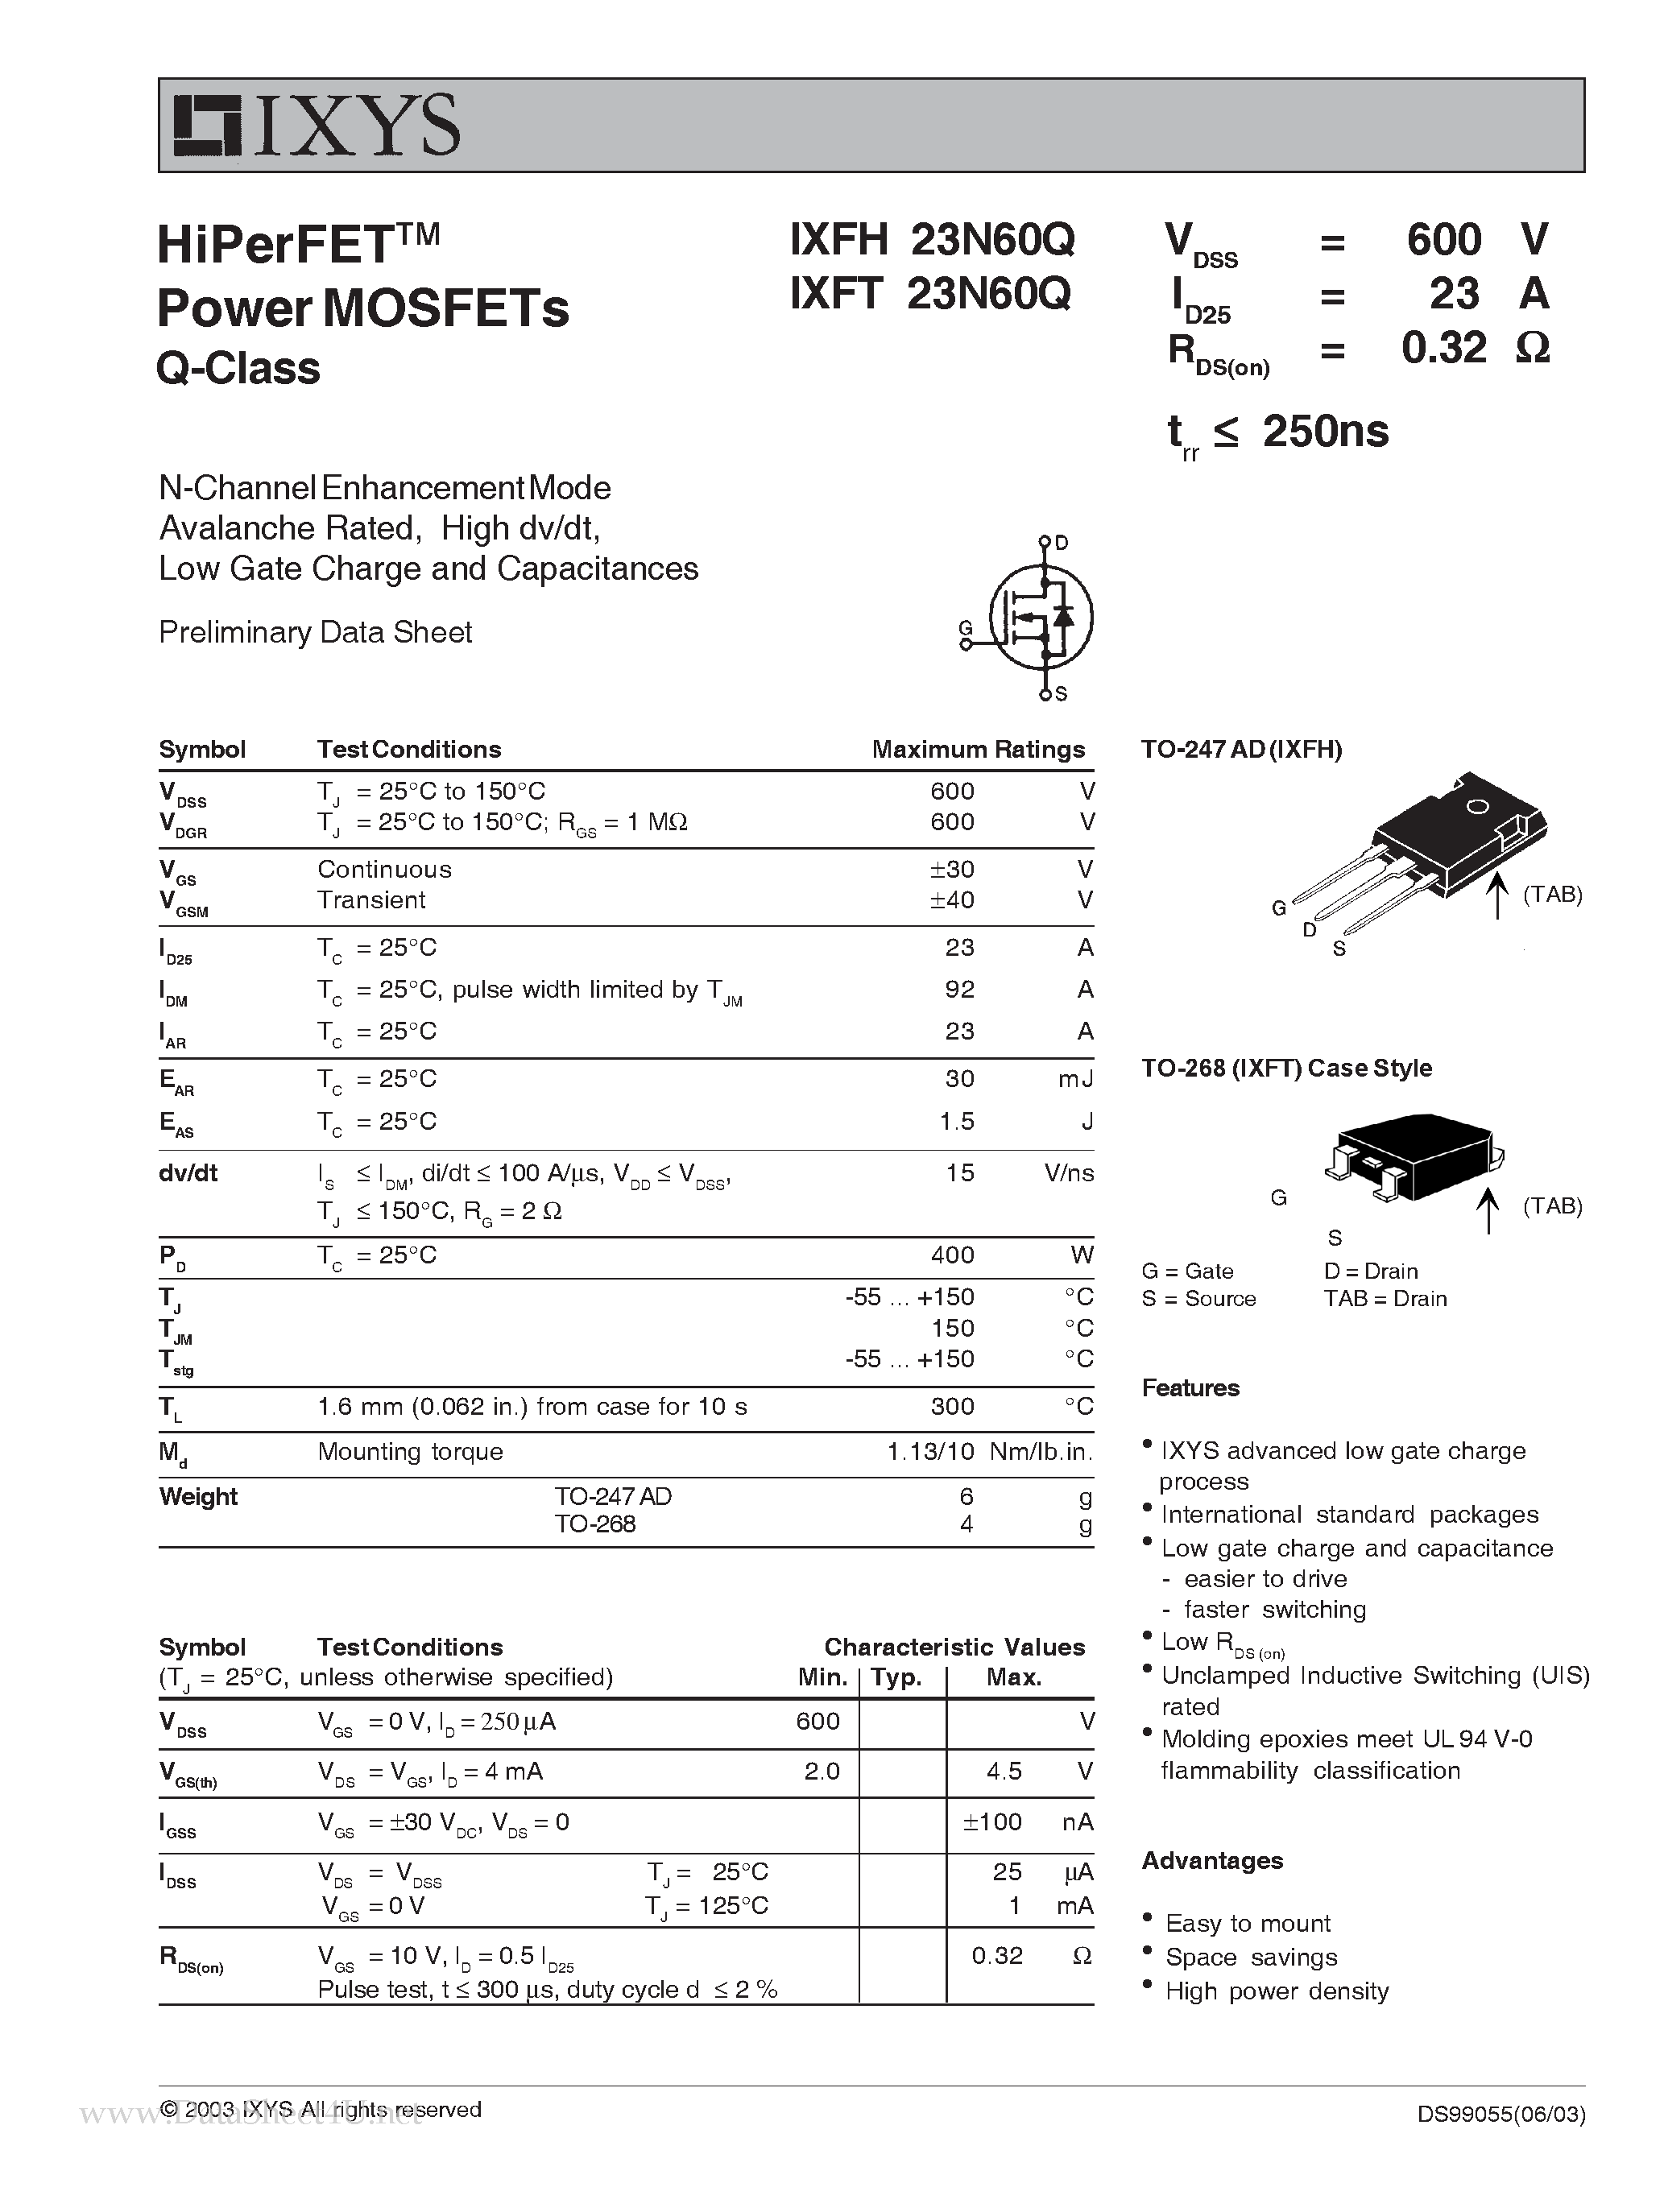 Даташит IXFT23N60Q - HiPerFET Power MOSFETs Q-Class страница 1